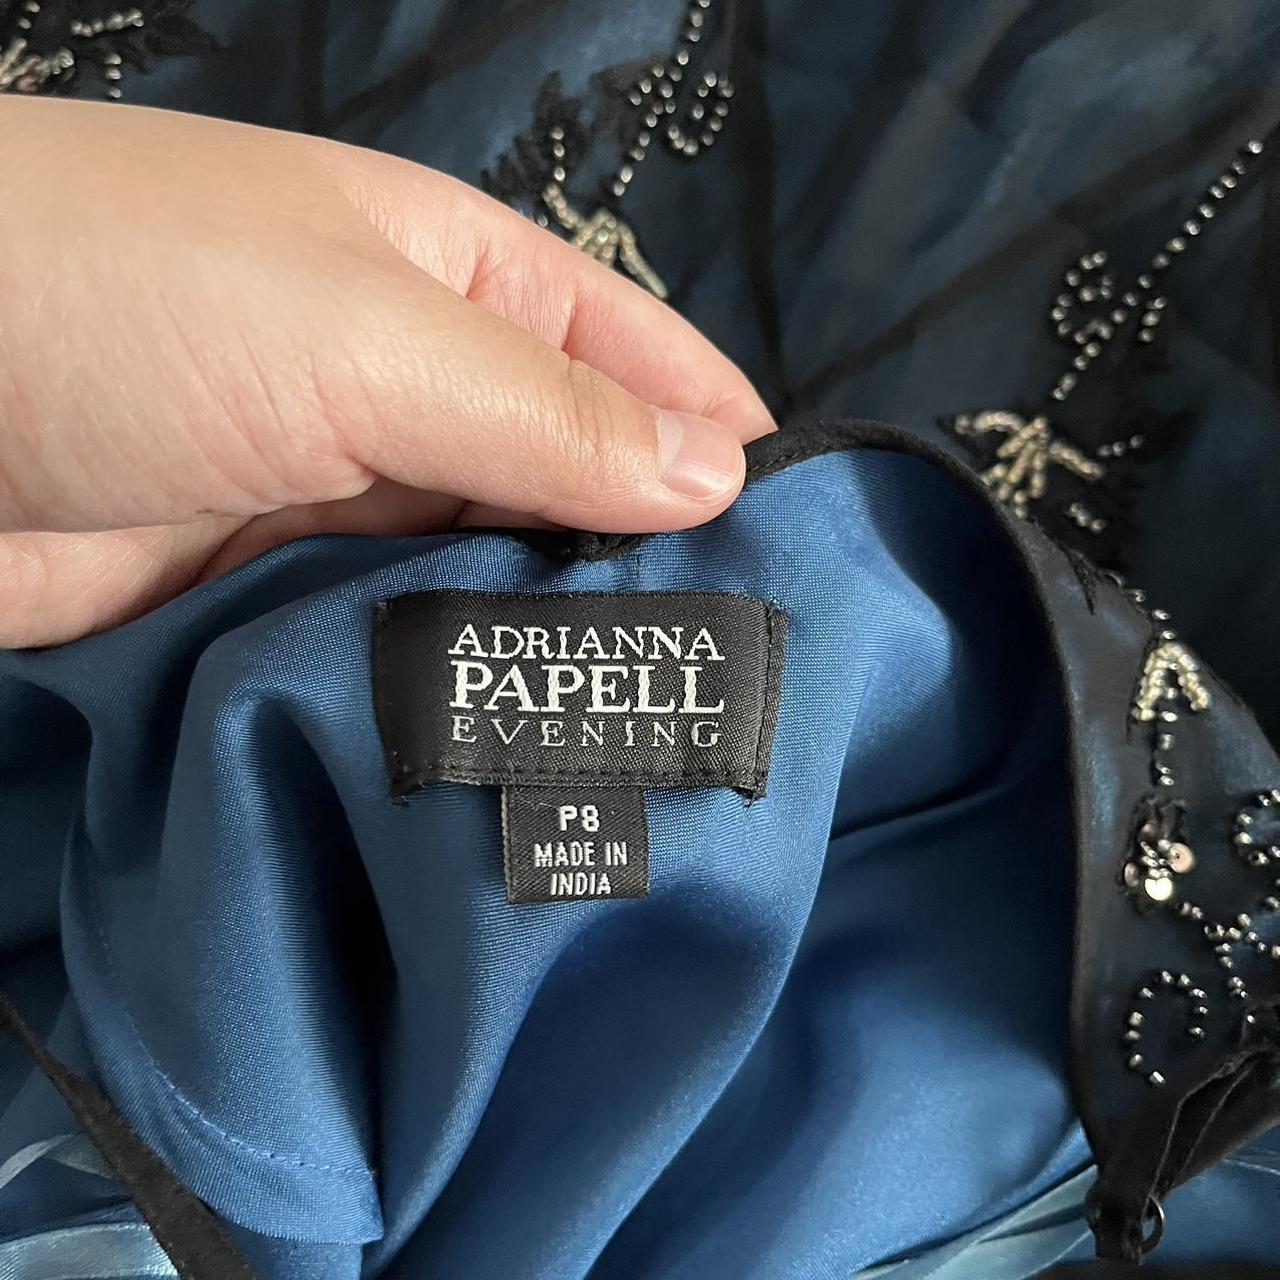 Dark fairygoth evening gown 90’s vintage silk maxi... - Depop